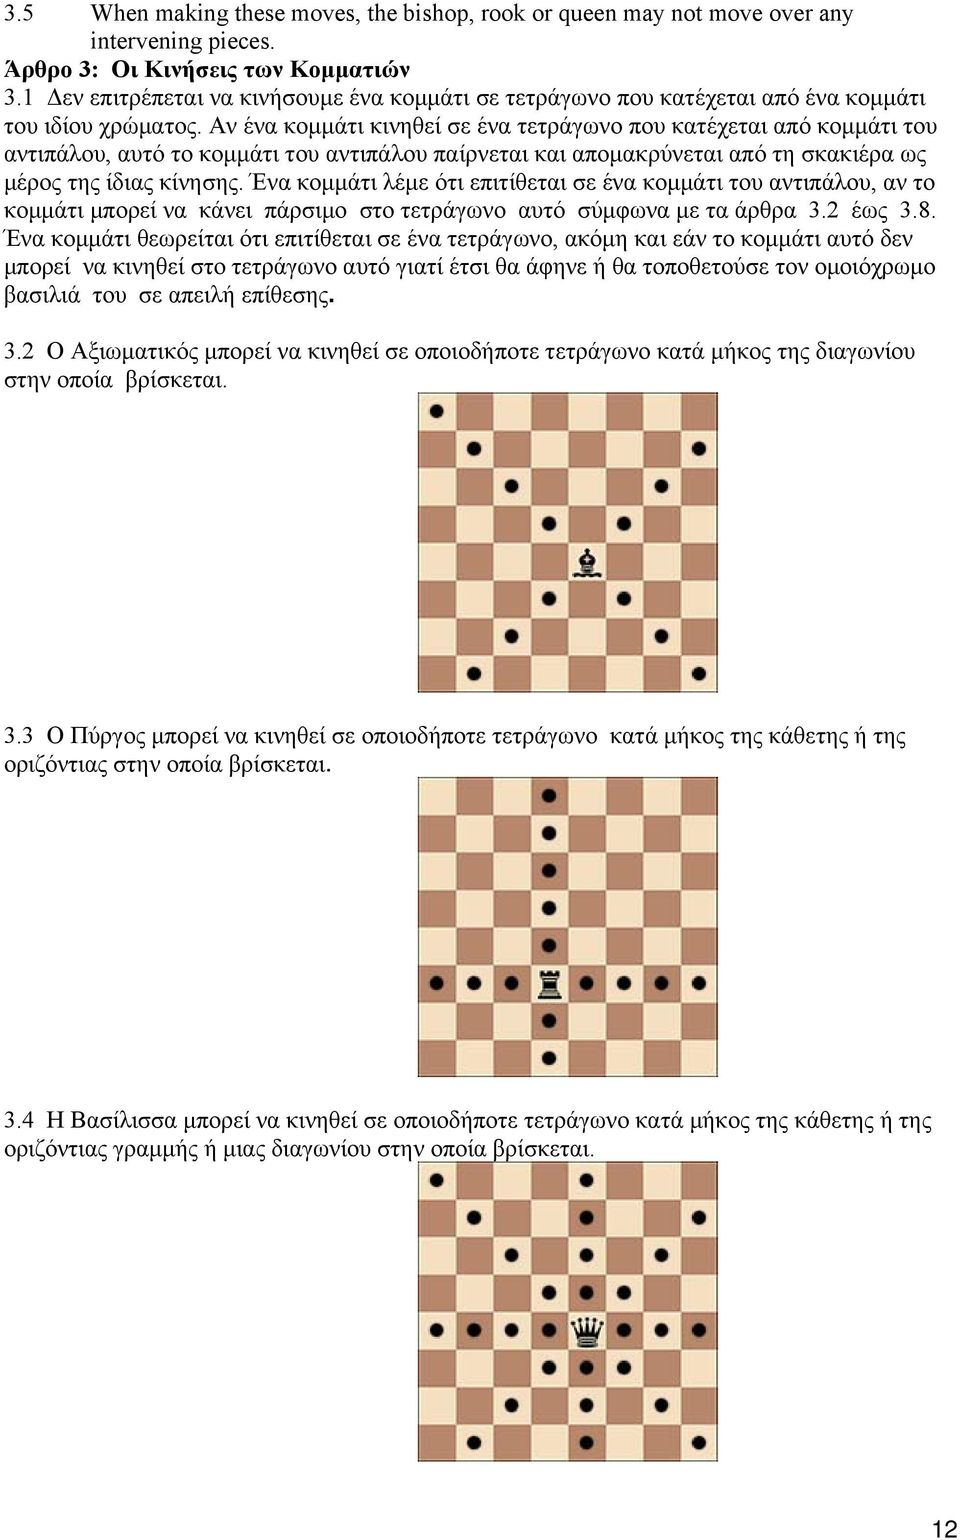 Αν ένα κομμάτι κινηθεί σε ένα τετράγωνο που κατέχεται από κομμάτι του αντιπάλου, αυτό το κομμάτι του αντιπάλου παίρνεται και απομακρύνεται από τη σκακιέρα ως μέρος της ίδιας κίνησης.